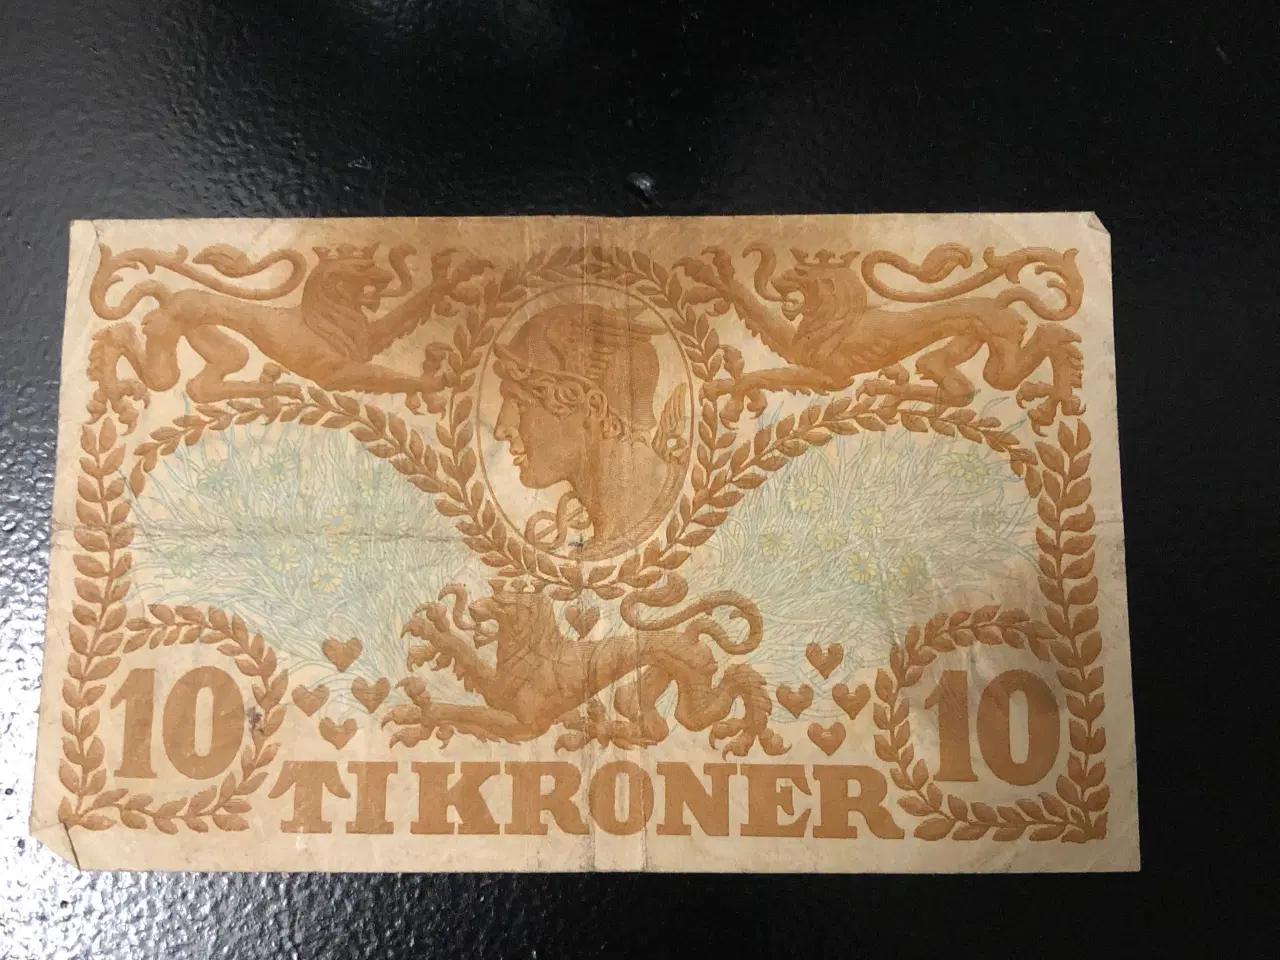 Billede 1 - 10 kroner seddel 1943